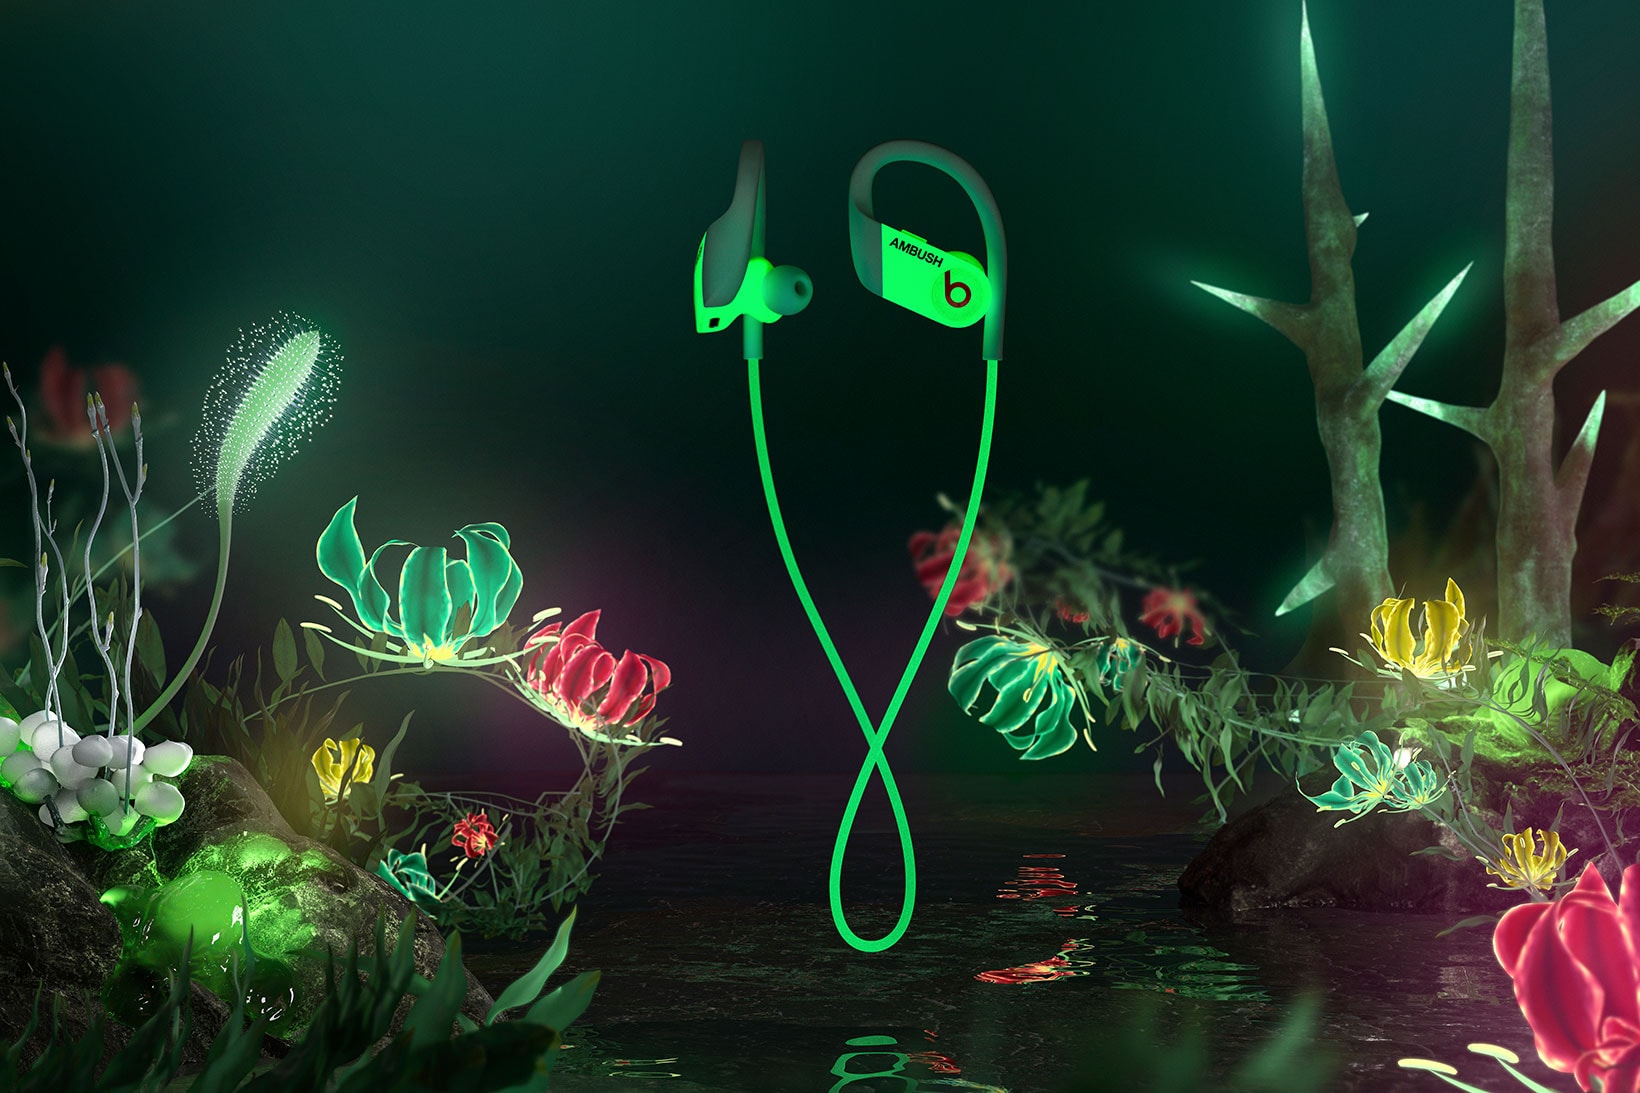 ambush yoon powerbeats headphones earphones glow in the dark collaboration price release